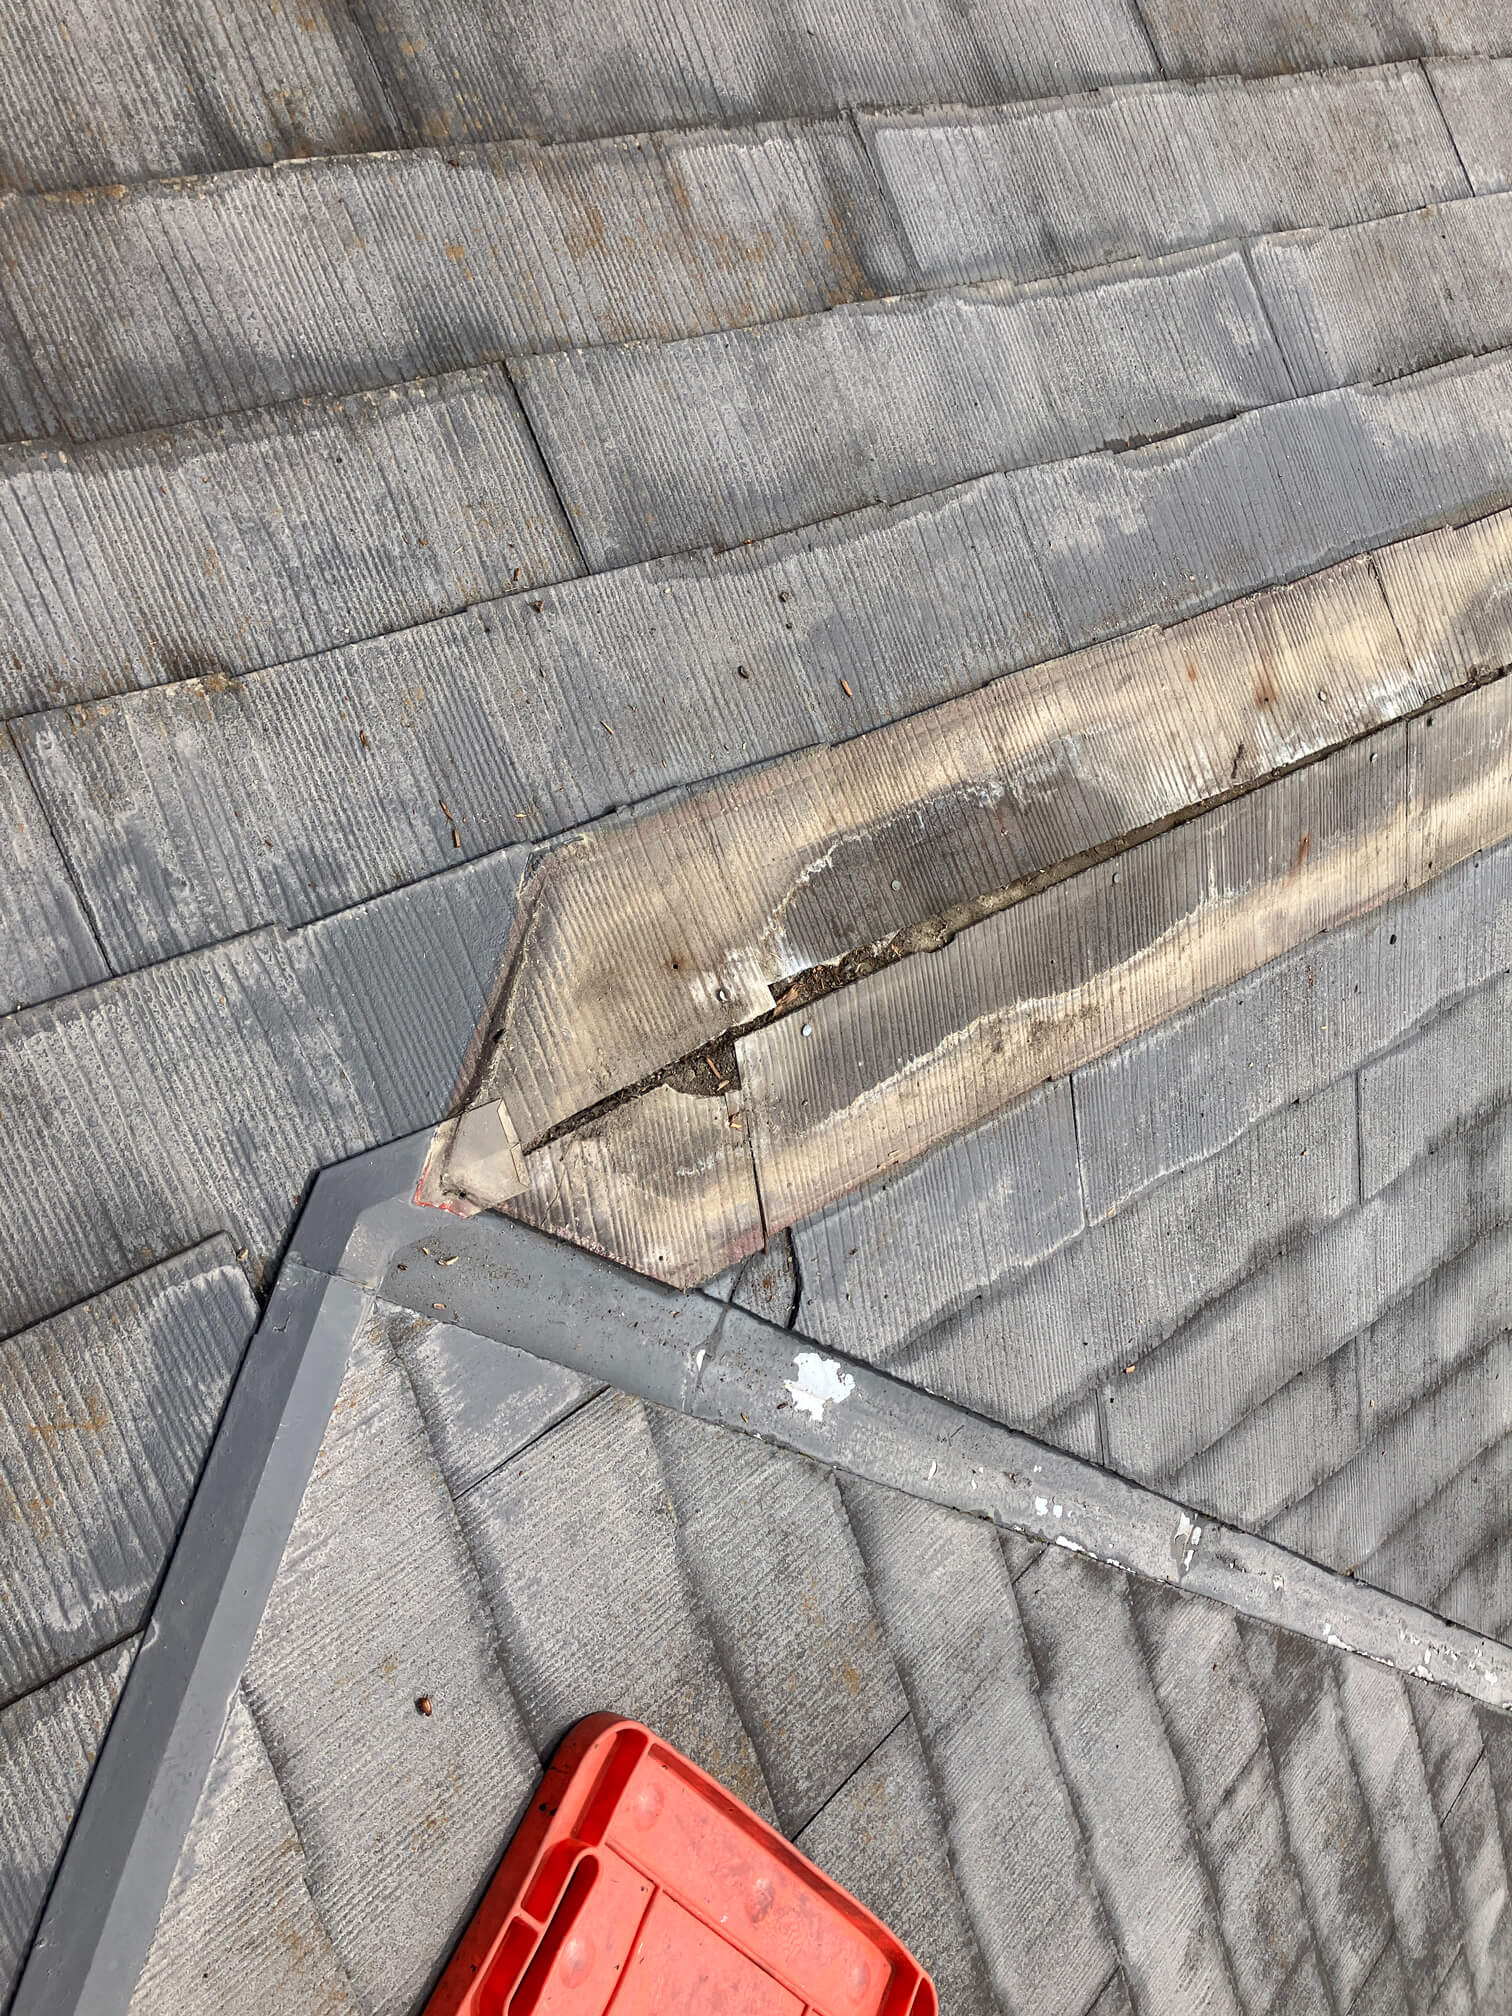 既存棟板金撤去後の屋根材のひび割れと腐食